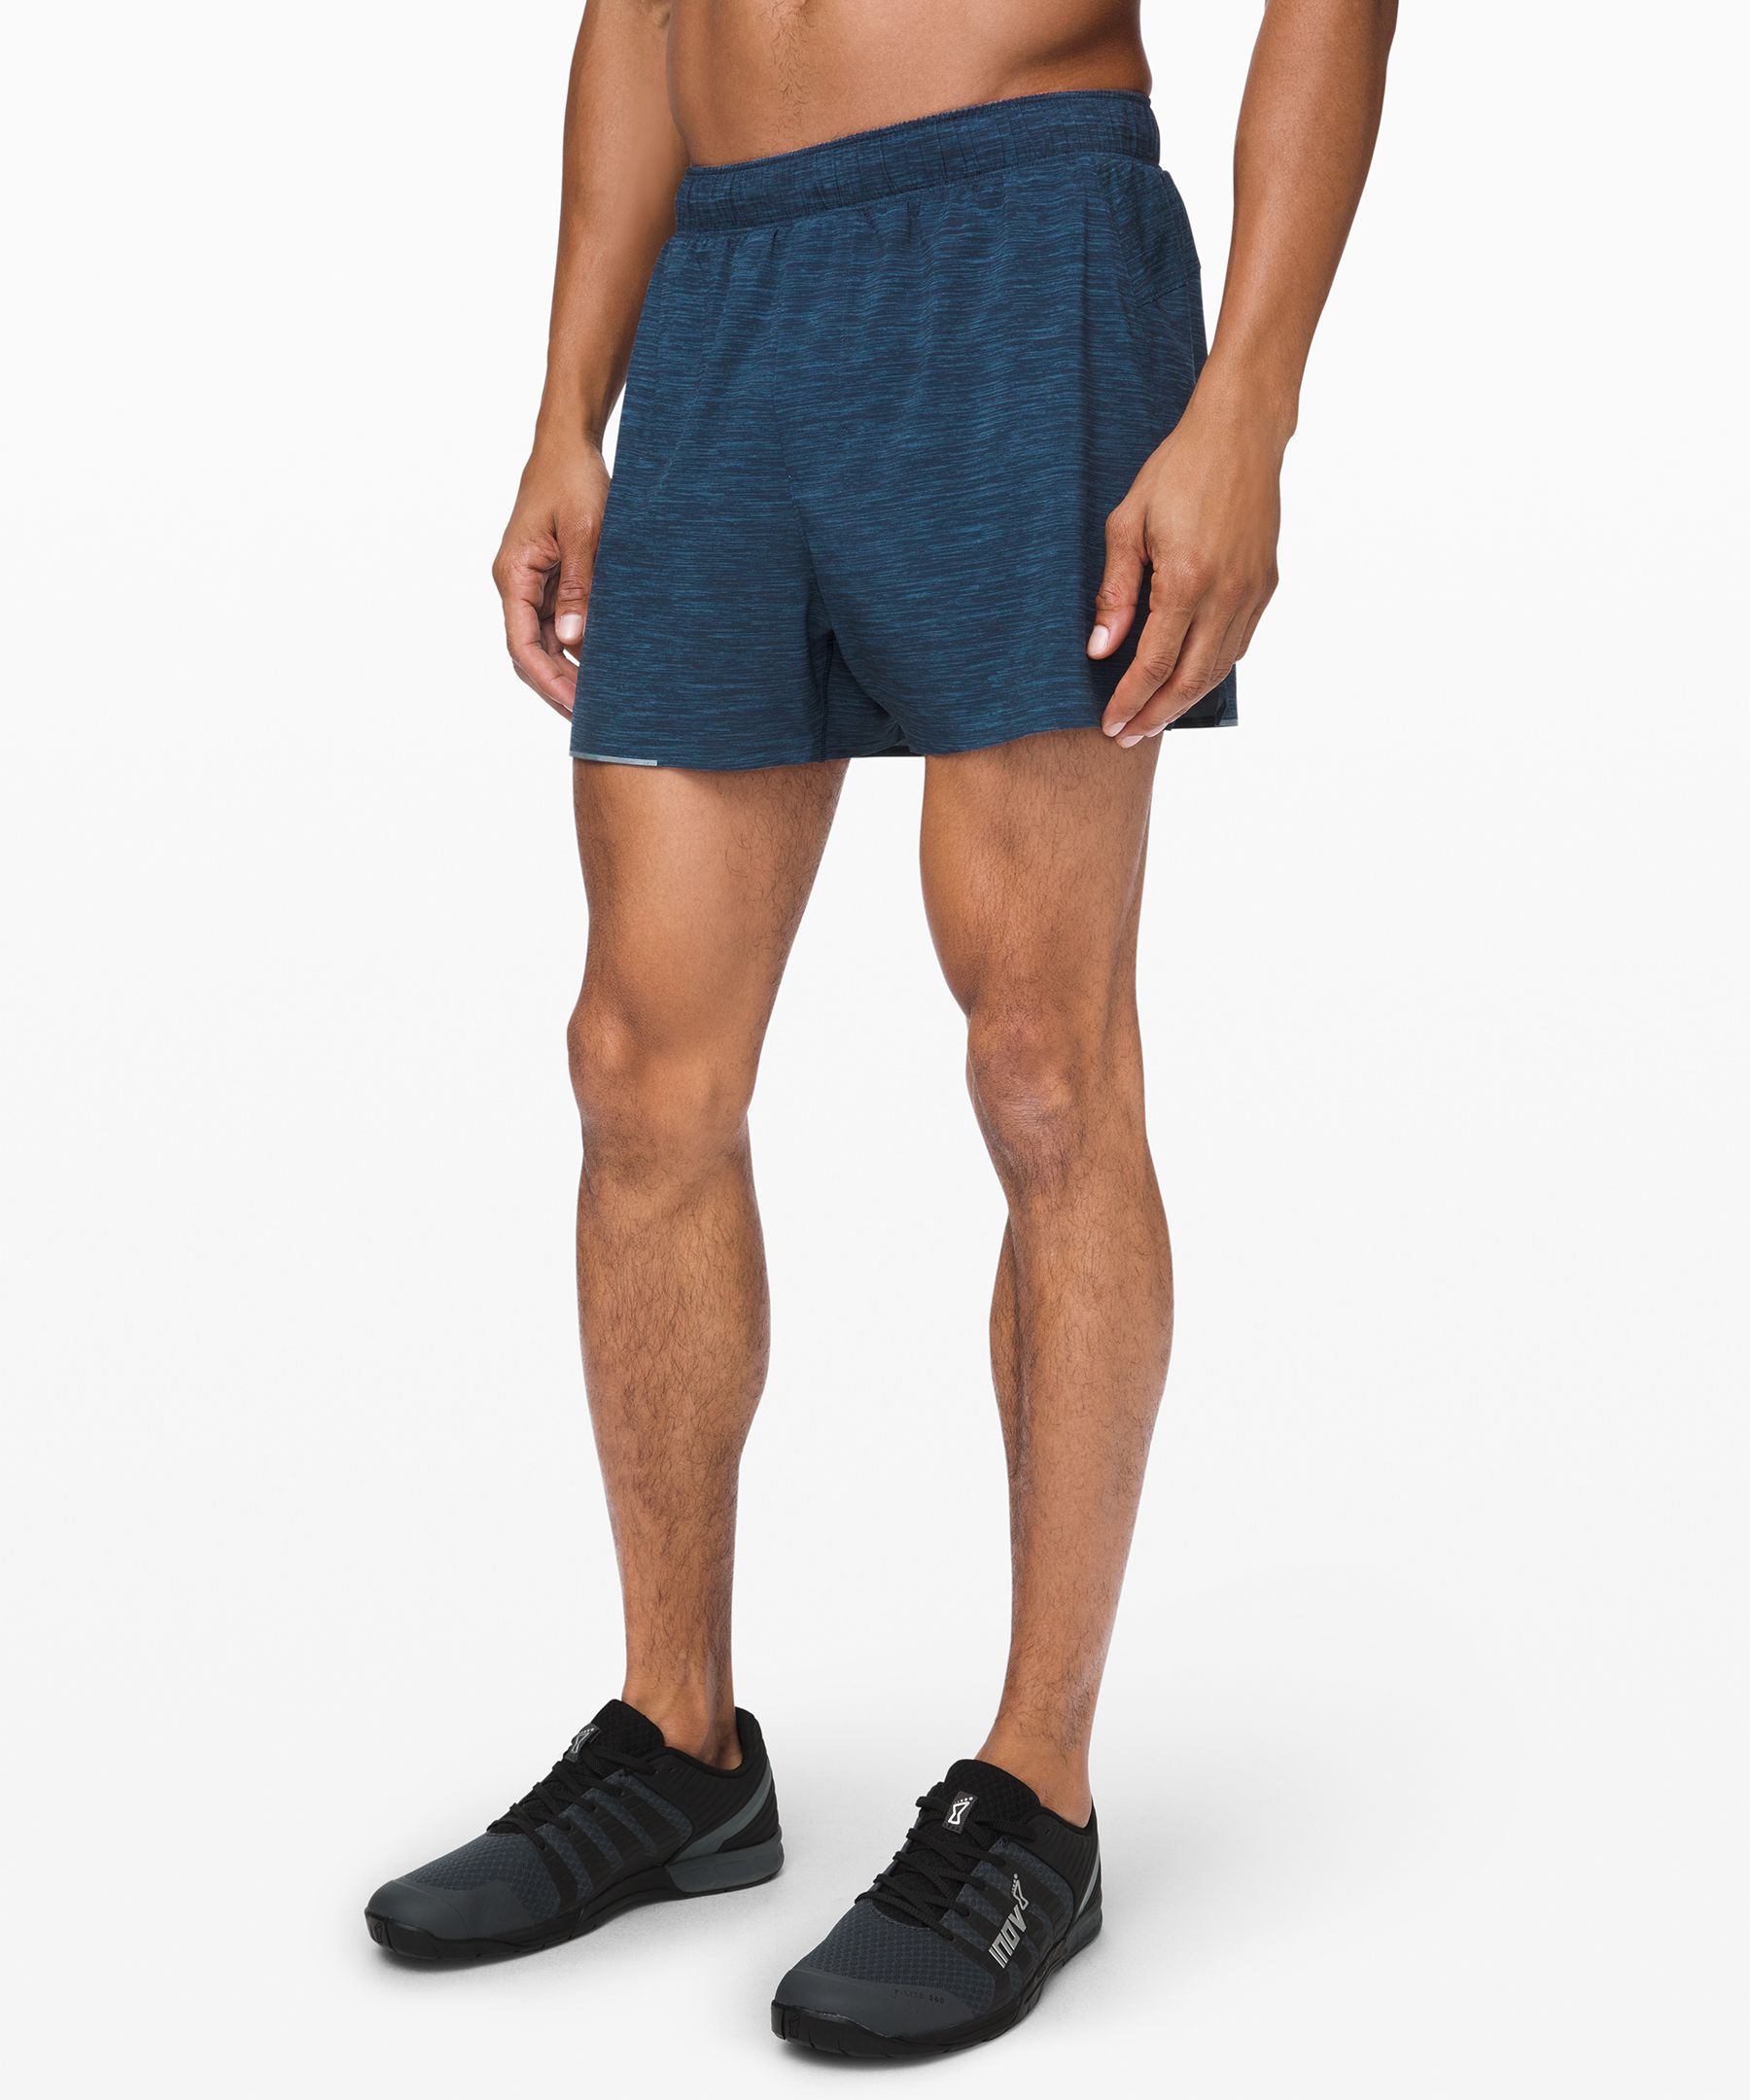 lululemon men's 4 inch shorts